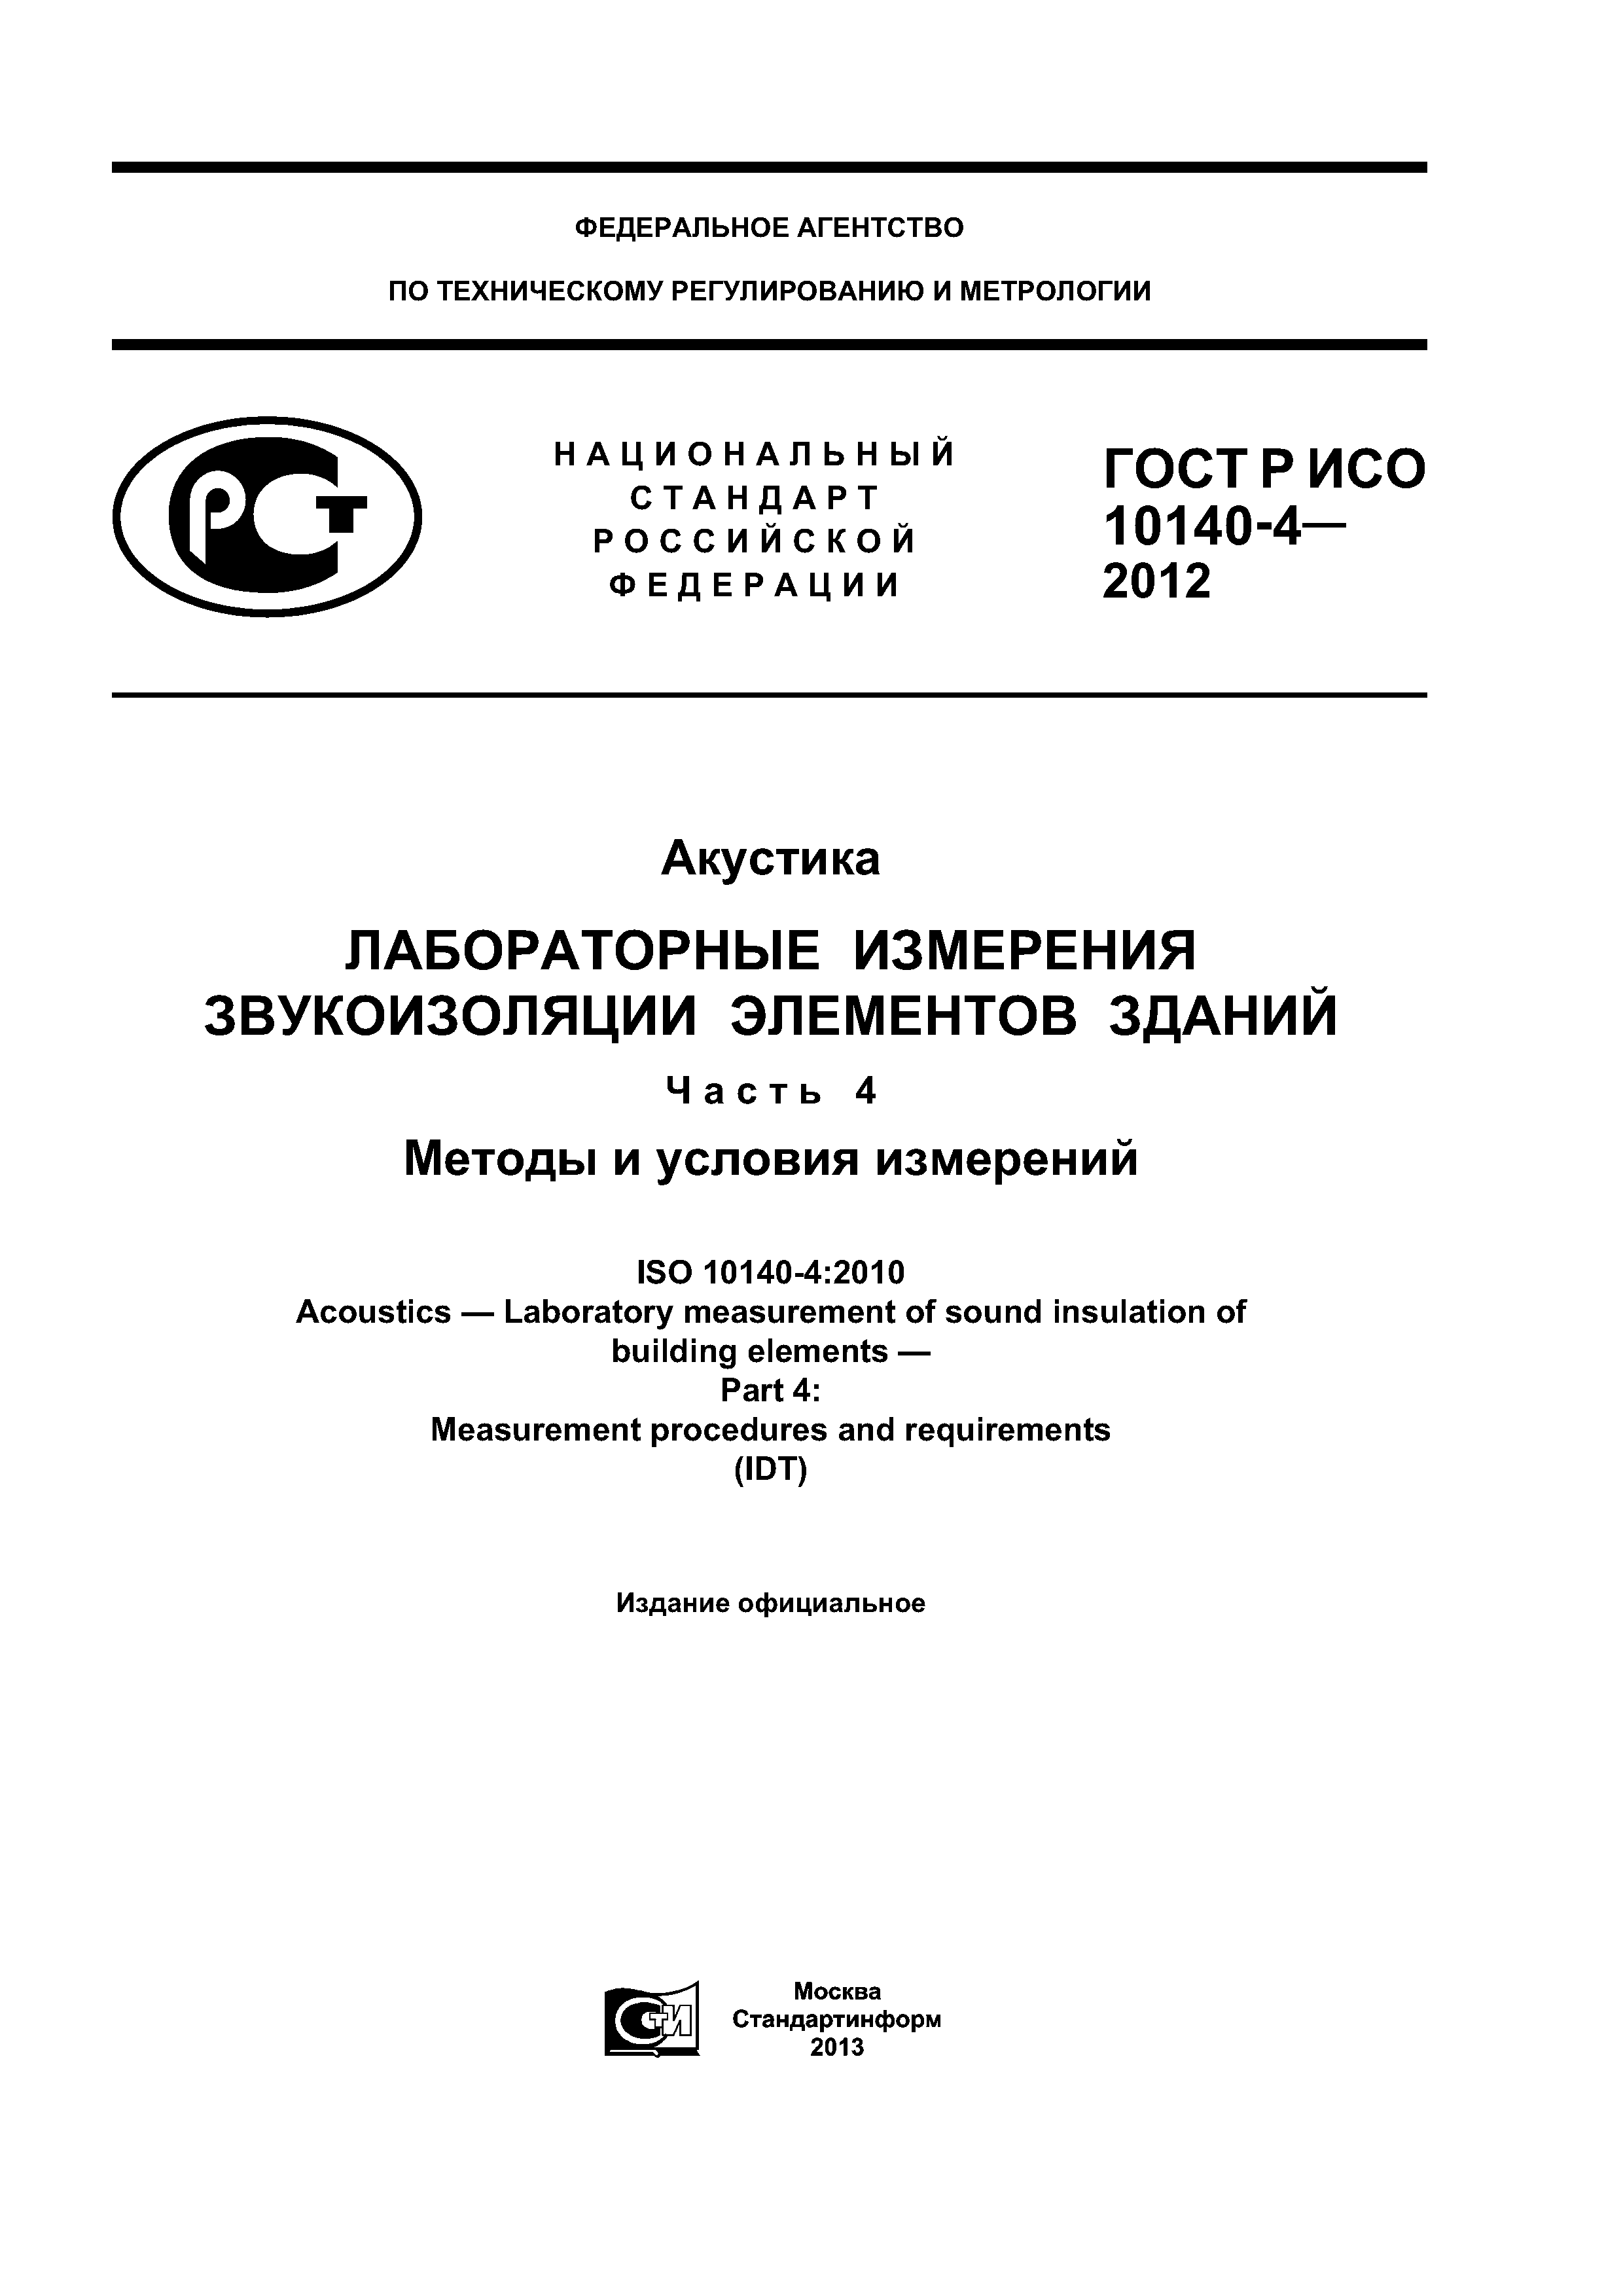 ГОСТ Р ИСО 10140-4-2012